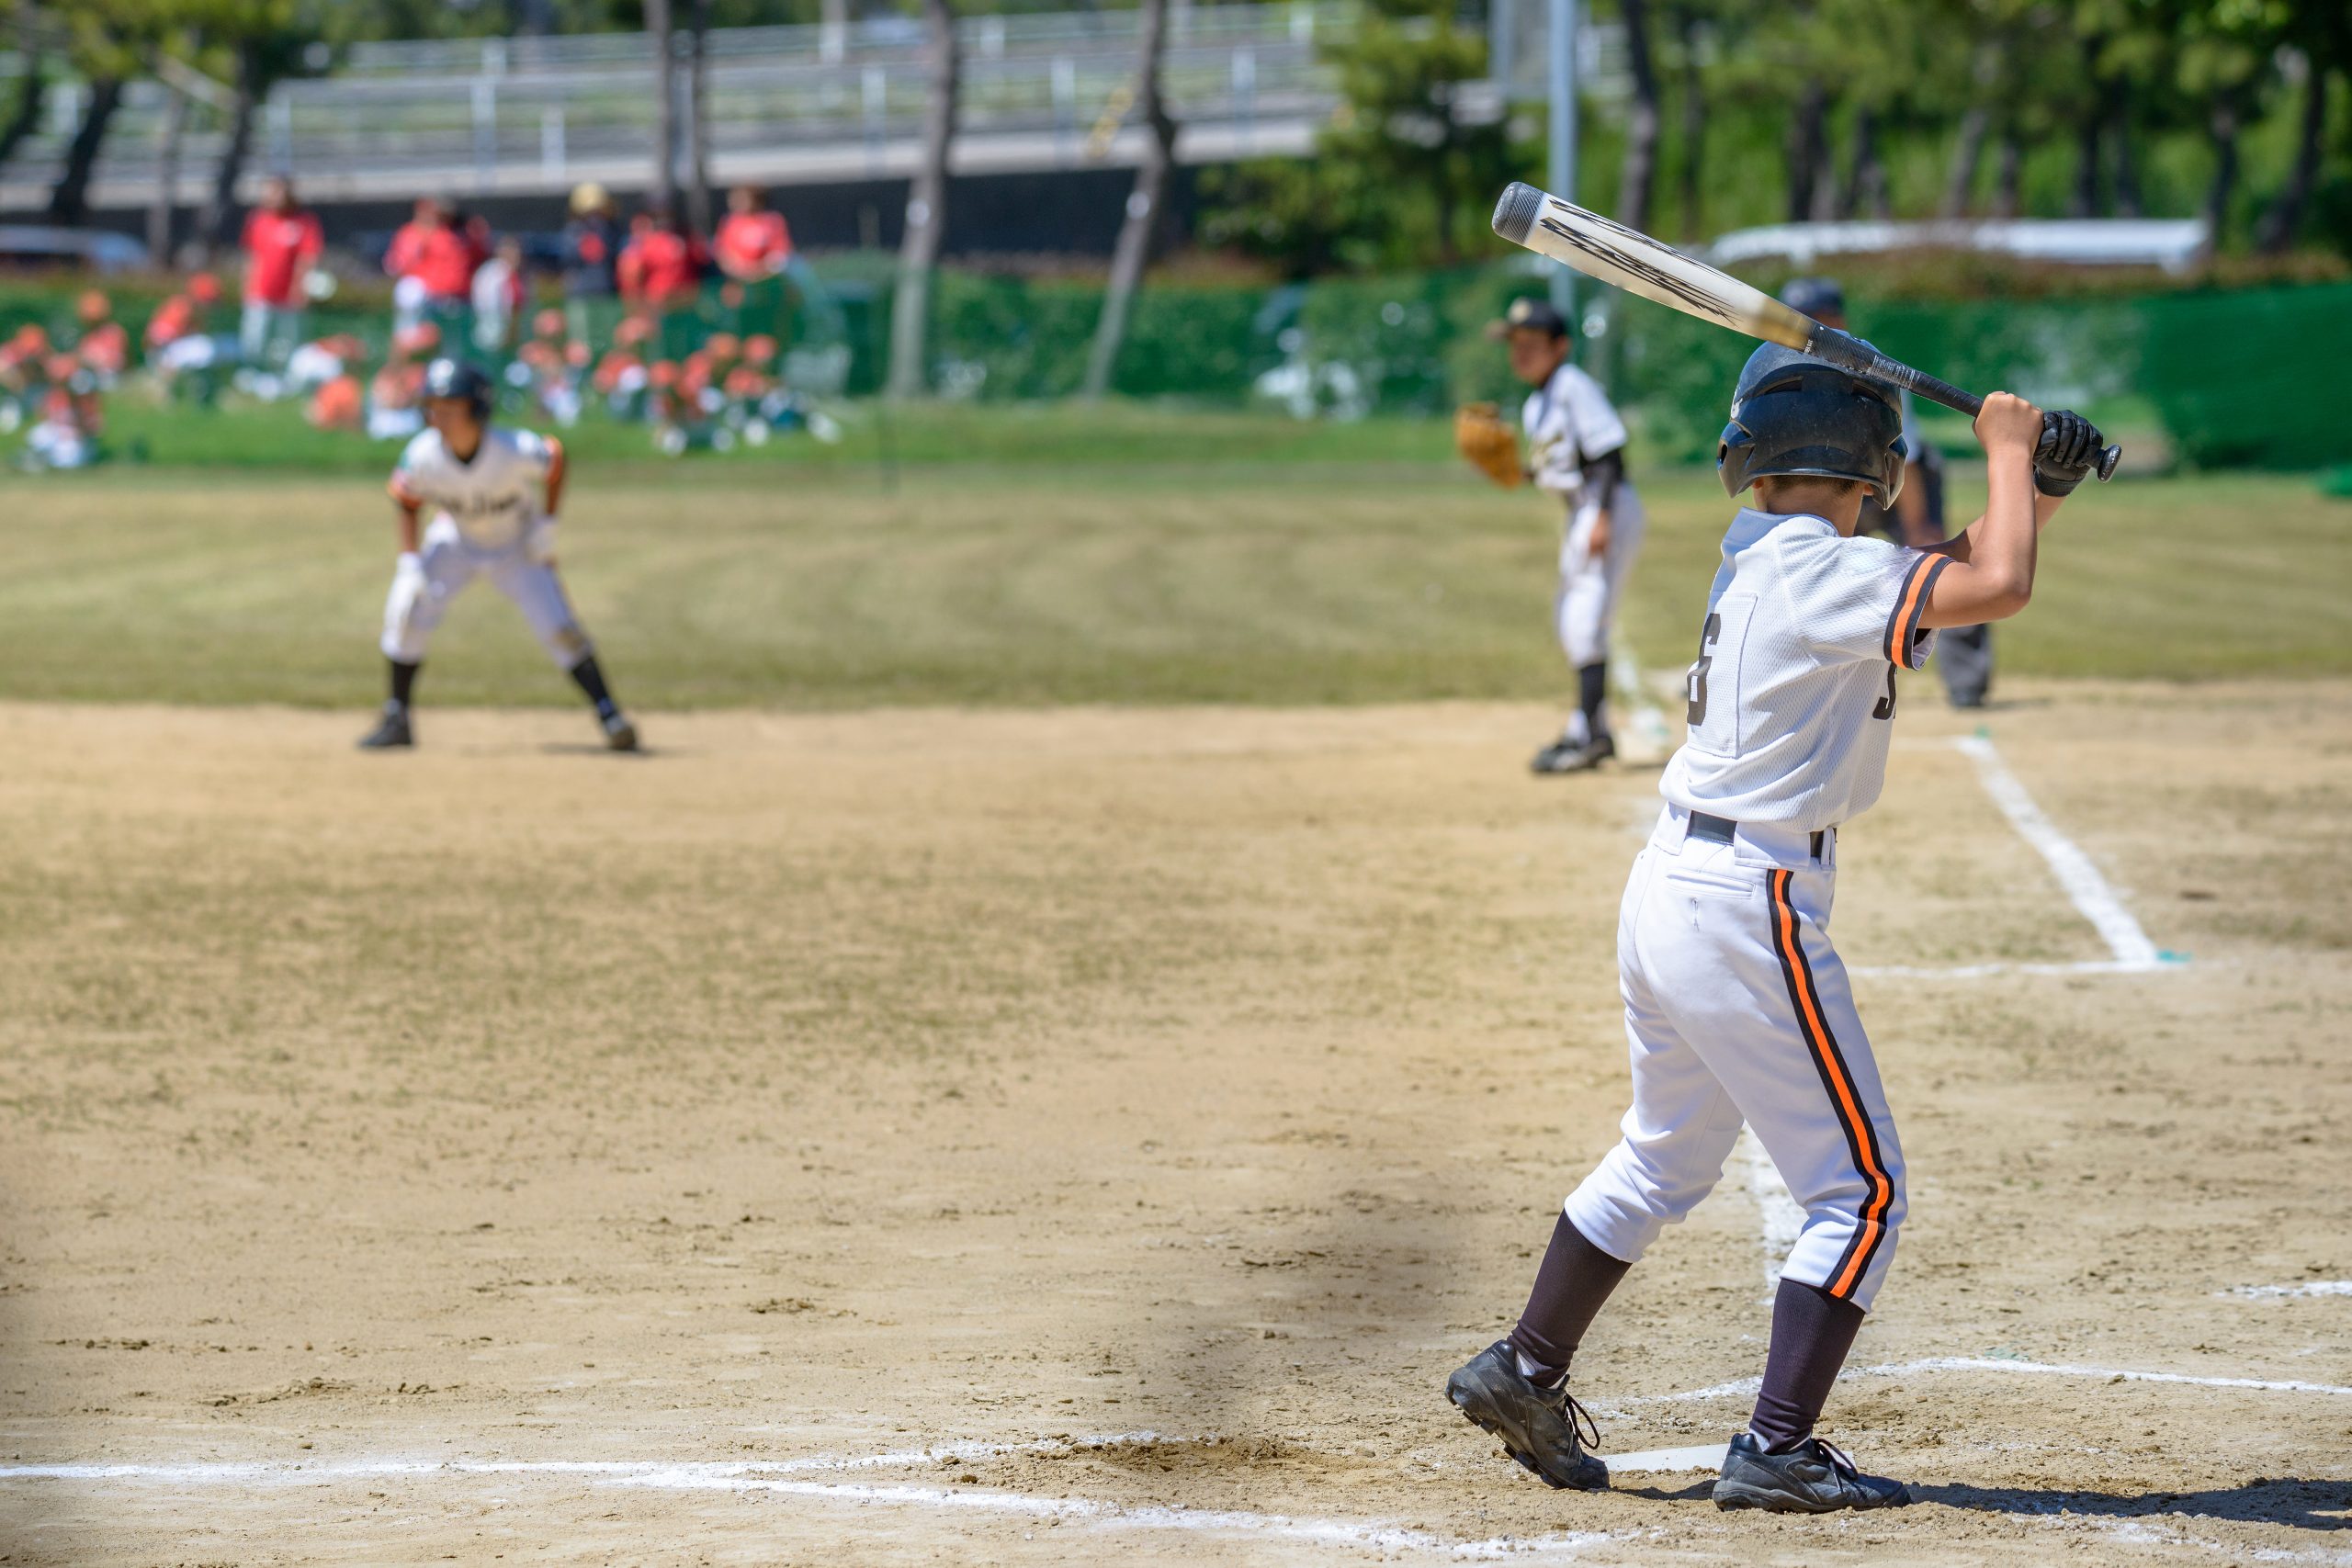 Young boy playing baseball ©mTaira